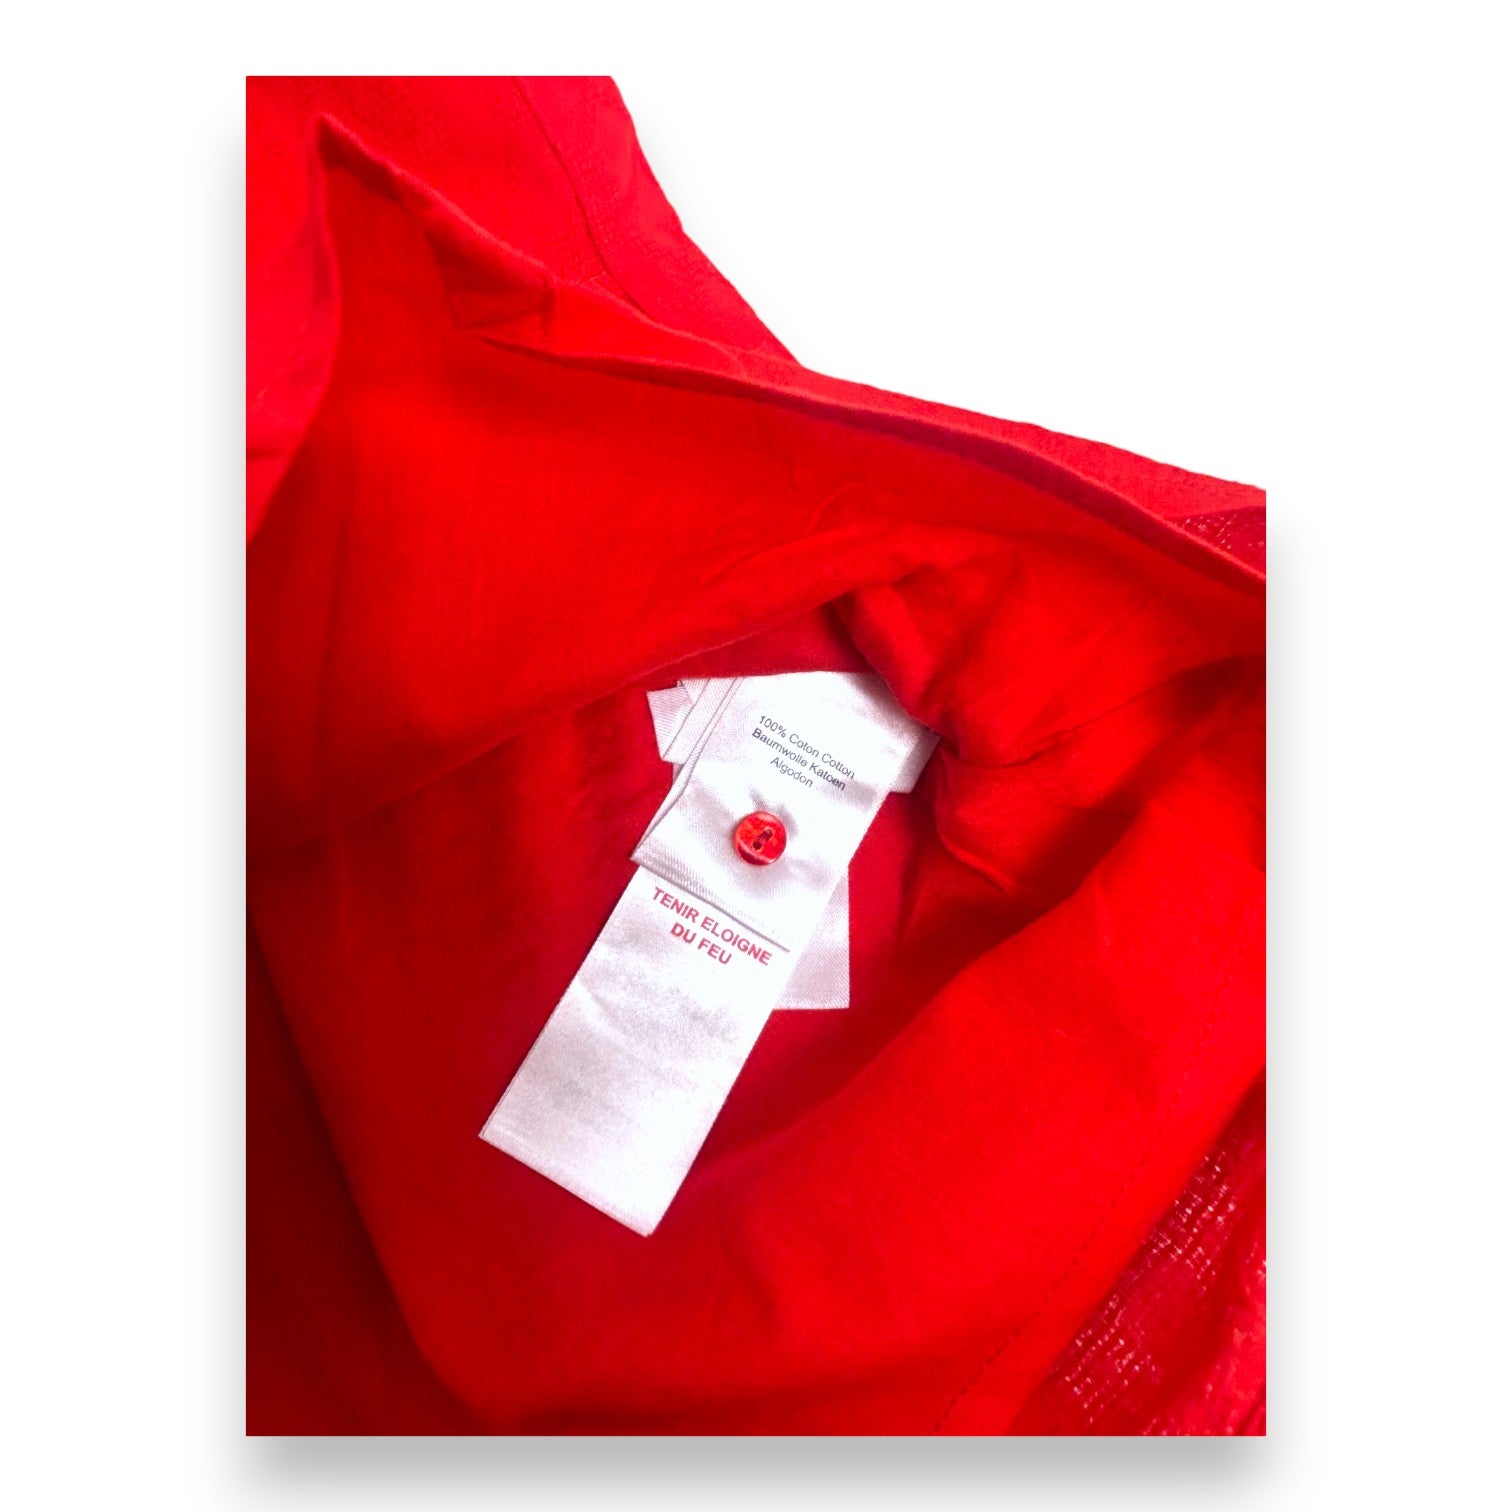 CYRILLUS - Robe rouge avec détails  - 4 ans